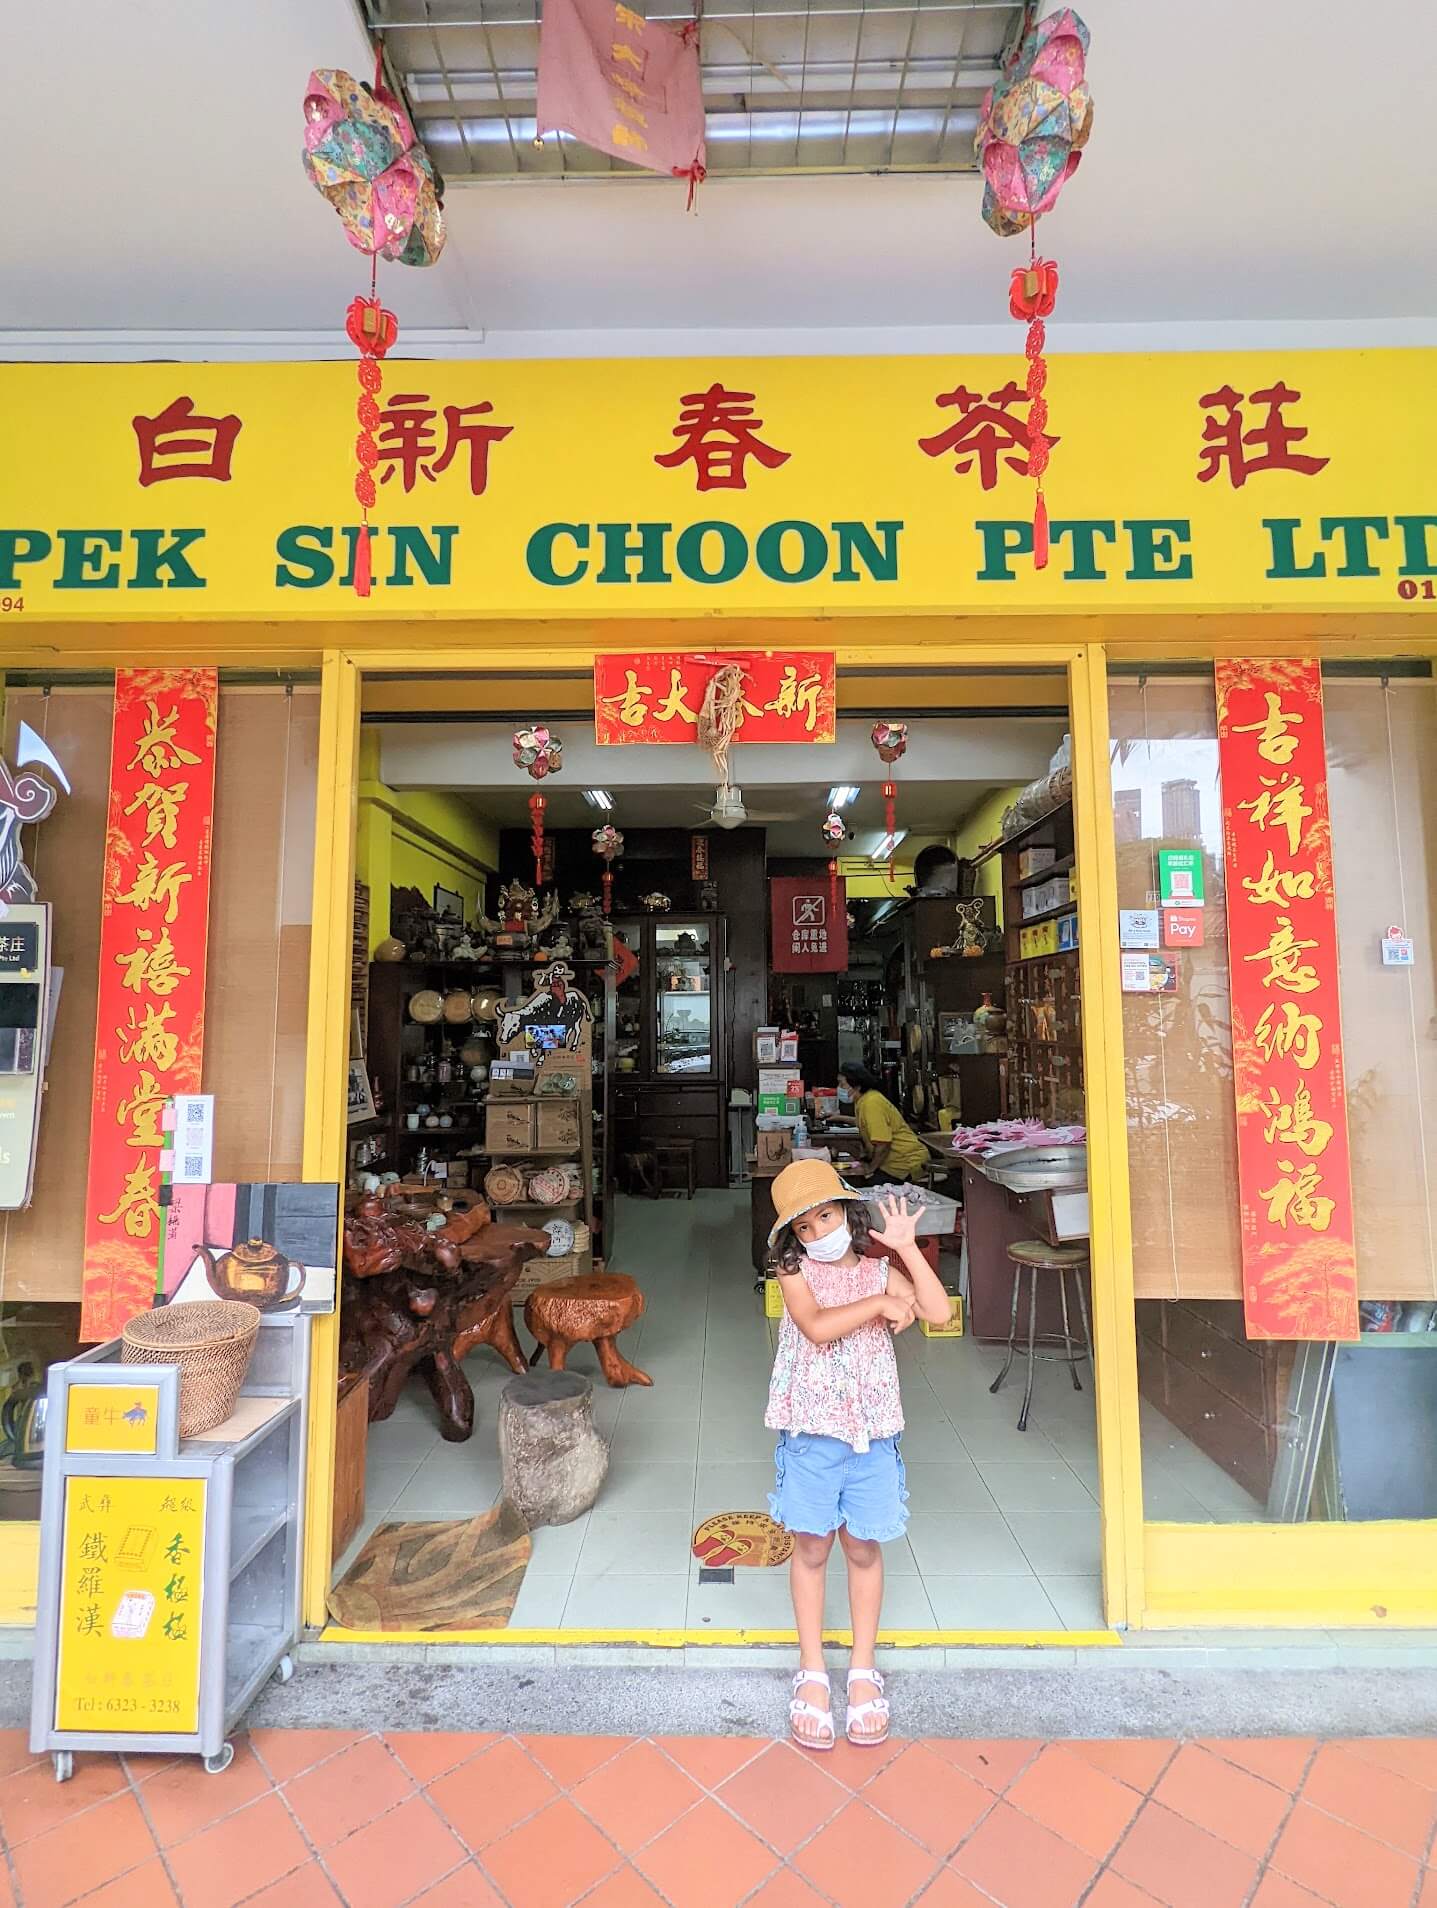 白新春茶荘　Pek Sin Choon Pte.Ltd.